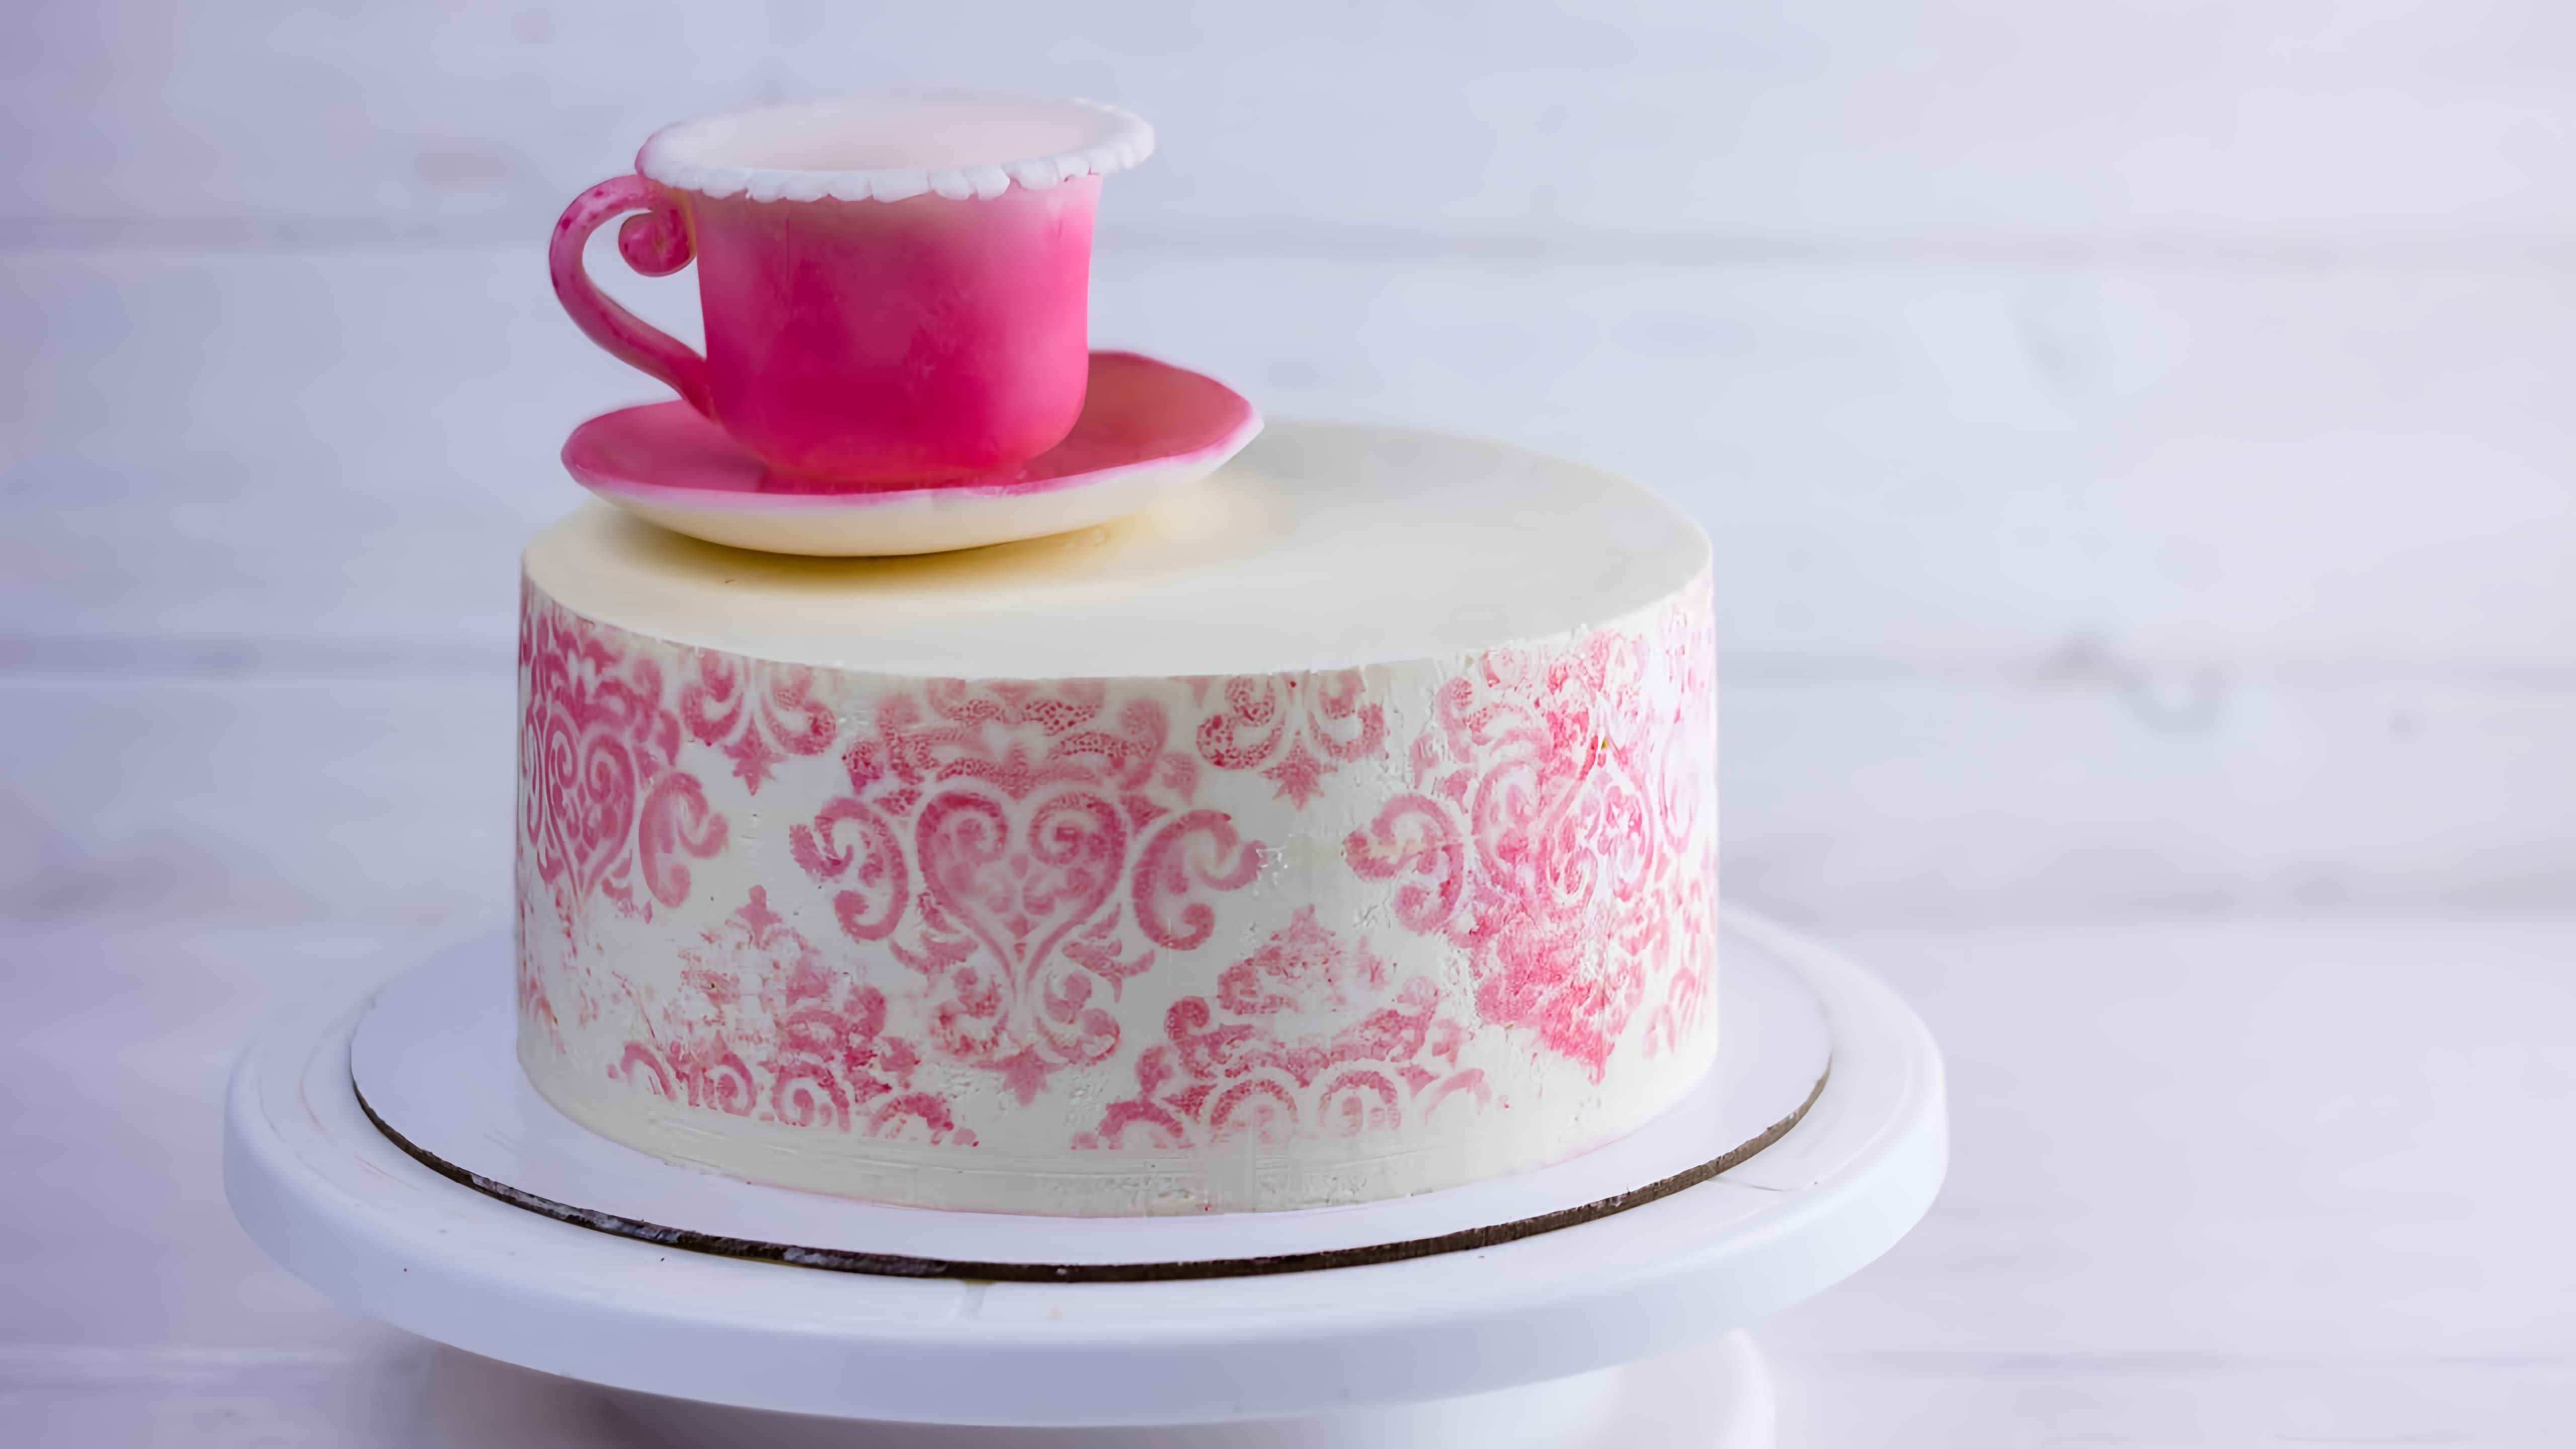 В этом видео демонстрируется рецепт торта "Карамельная девочка", который является альтернативой торта "Молочная девочка"